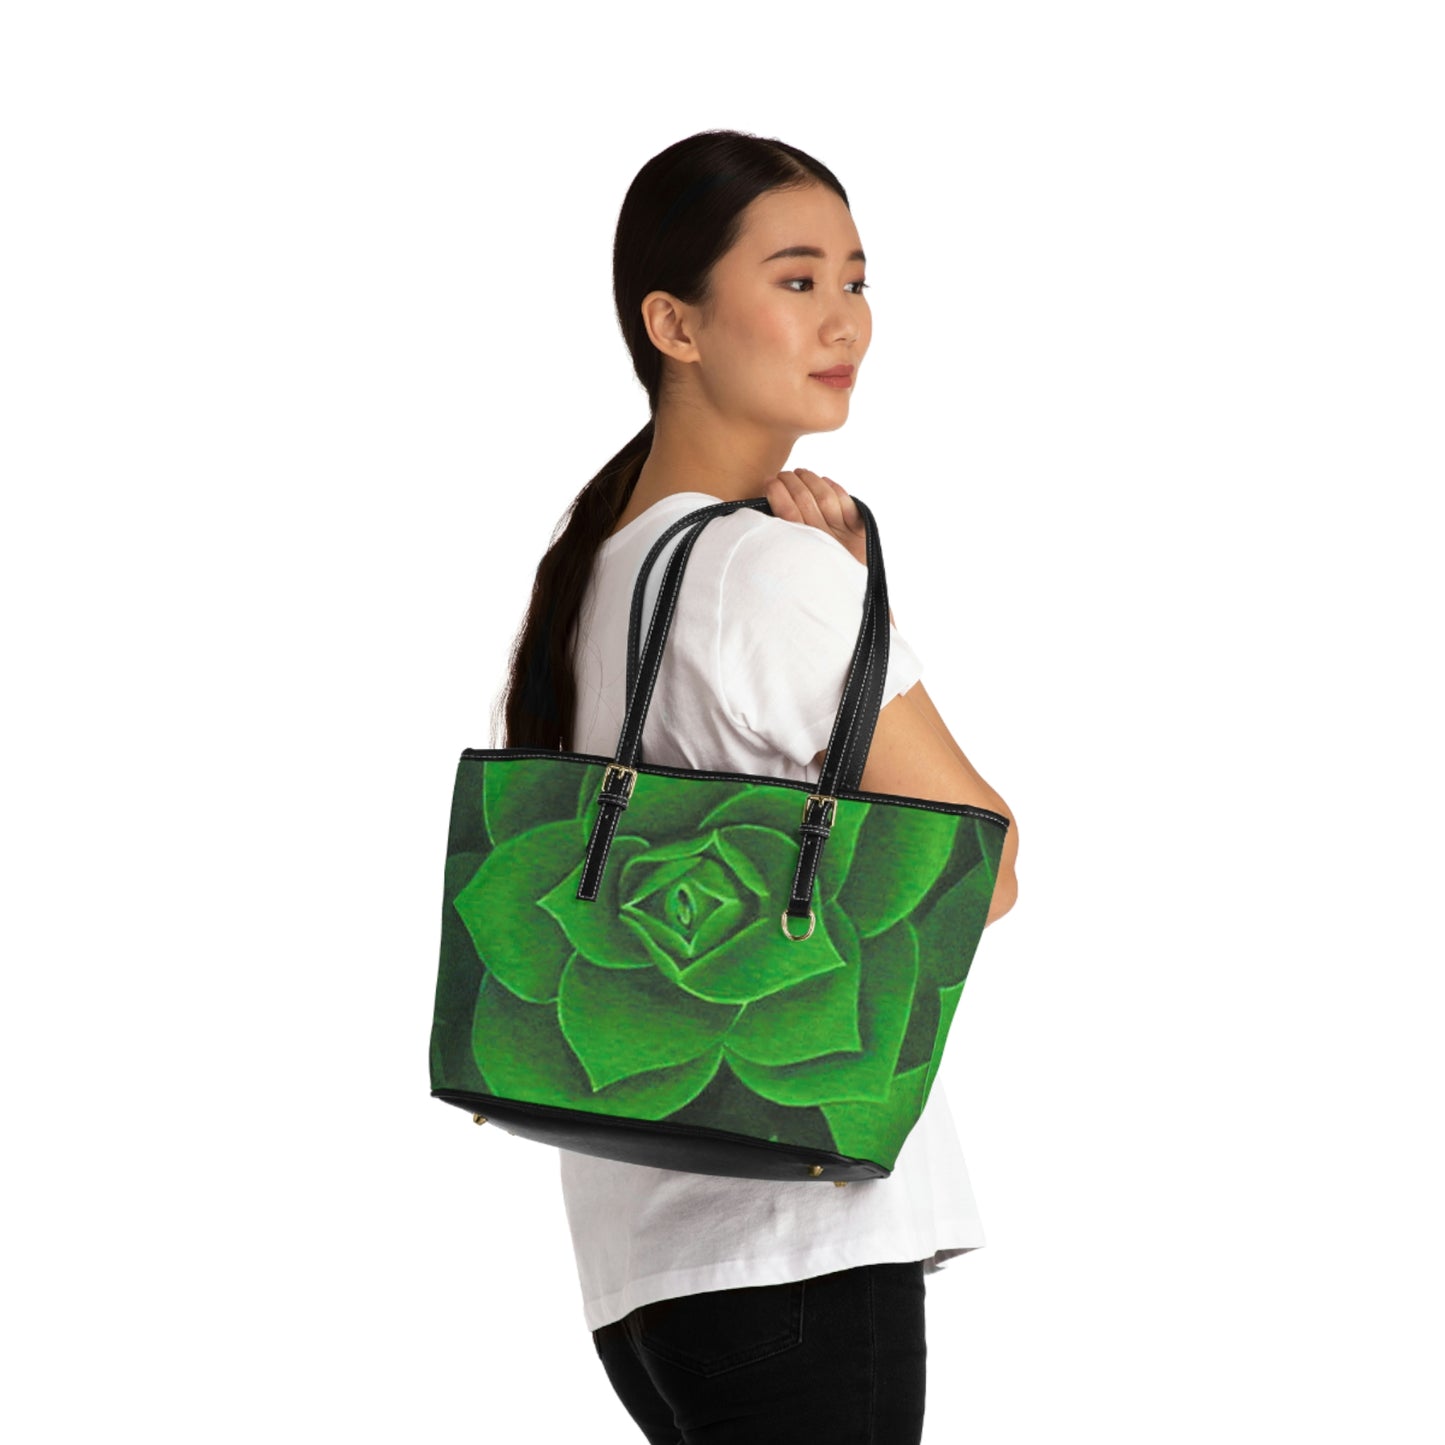 Emerald Succulent Handbag